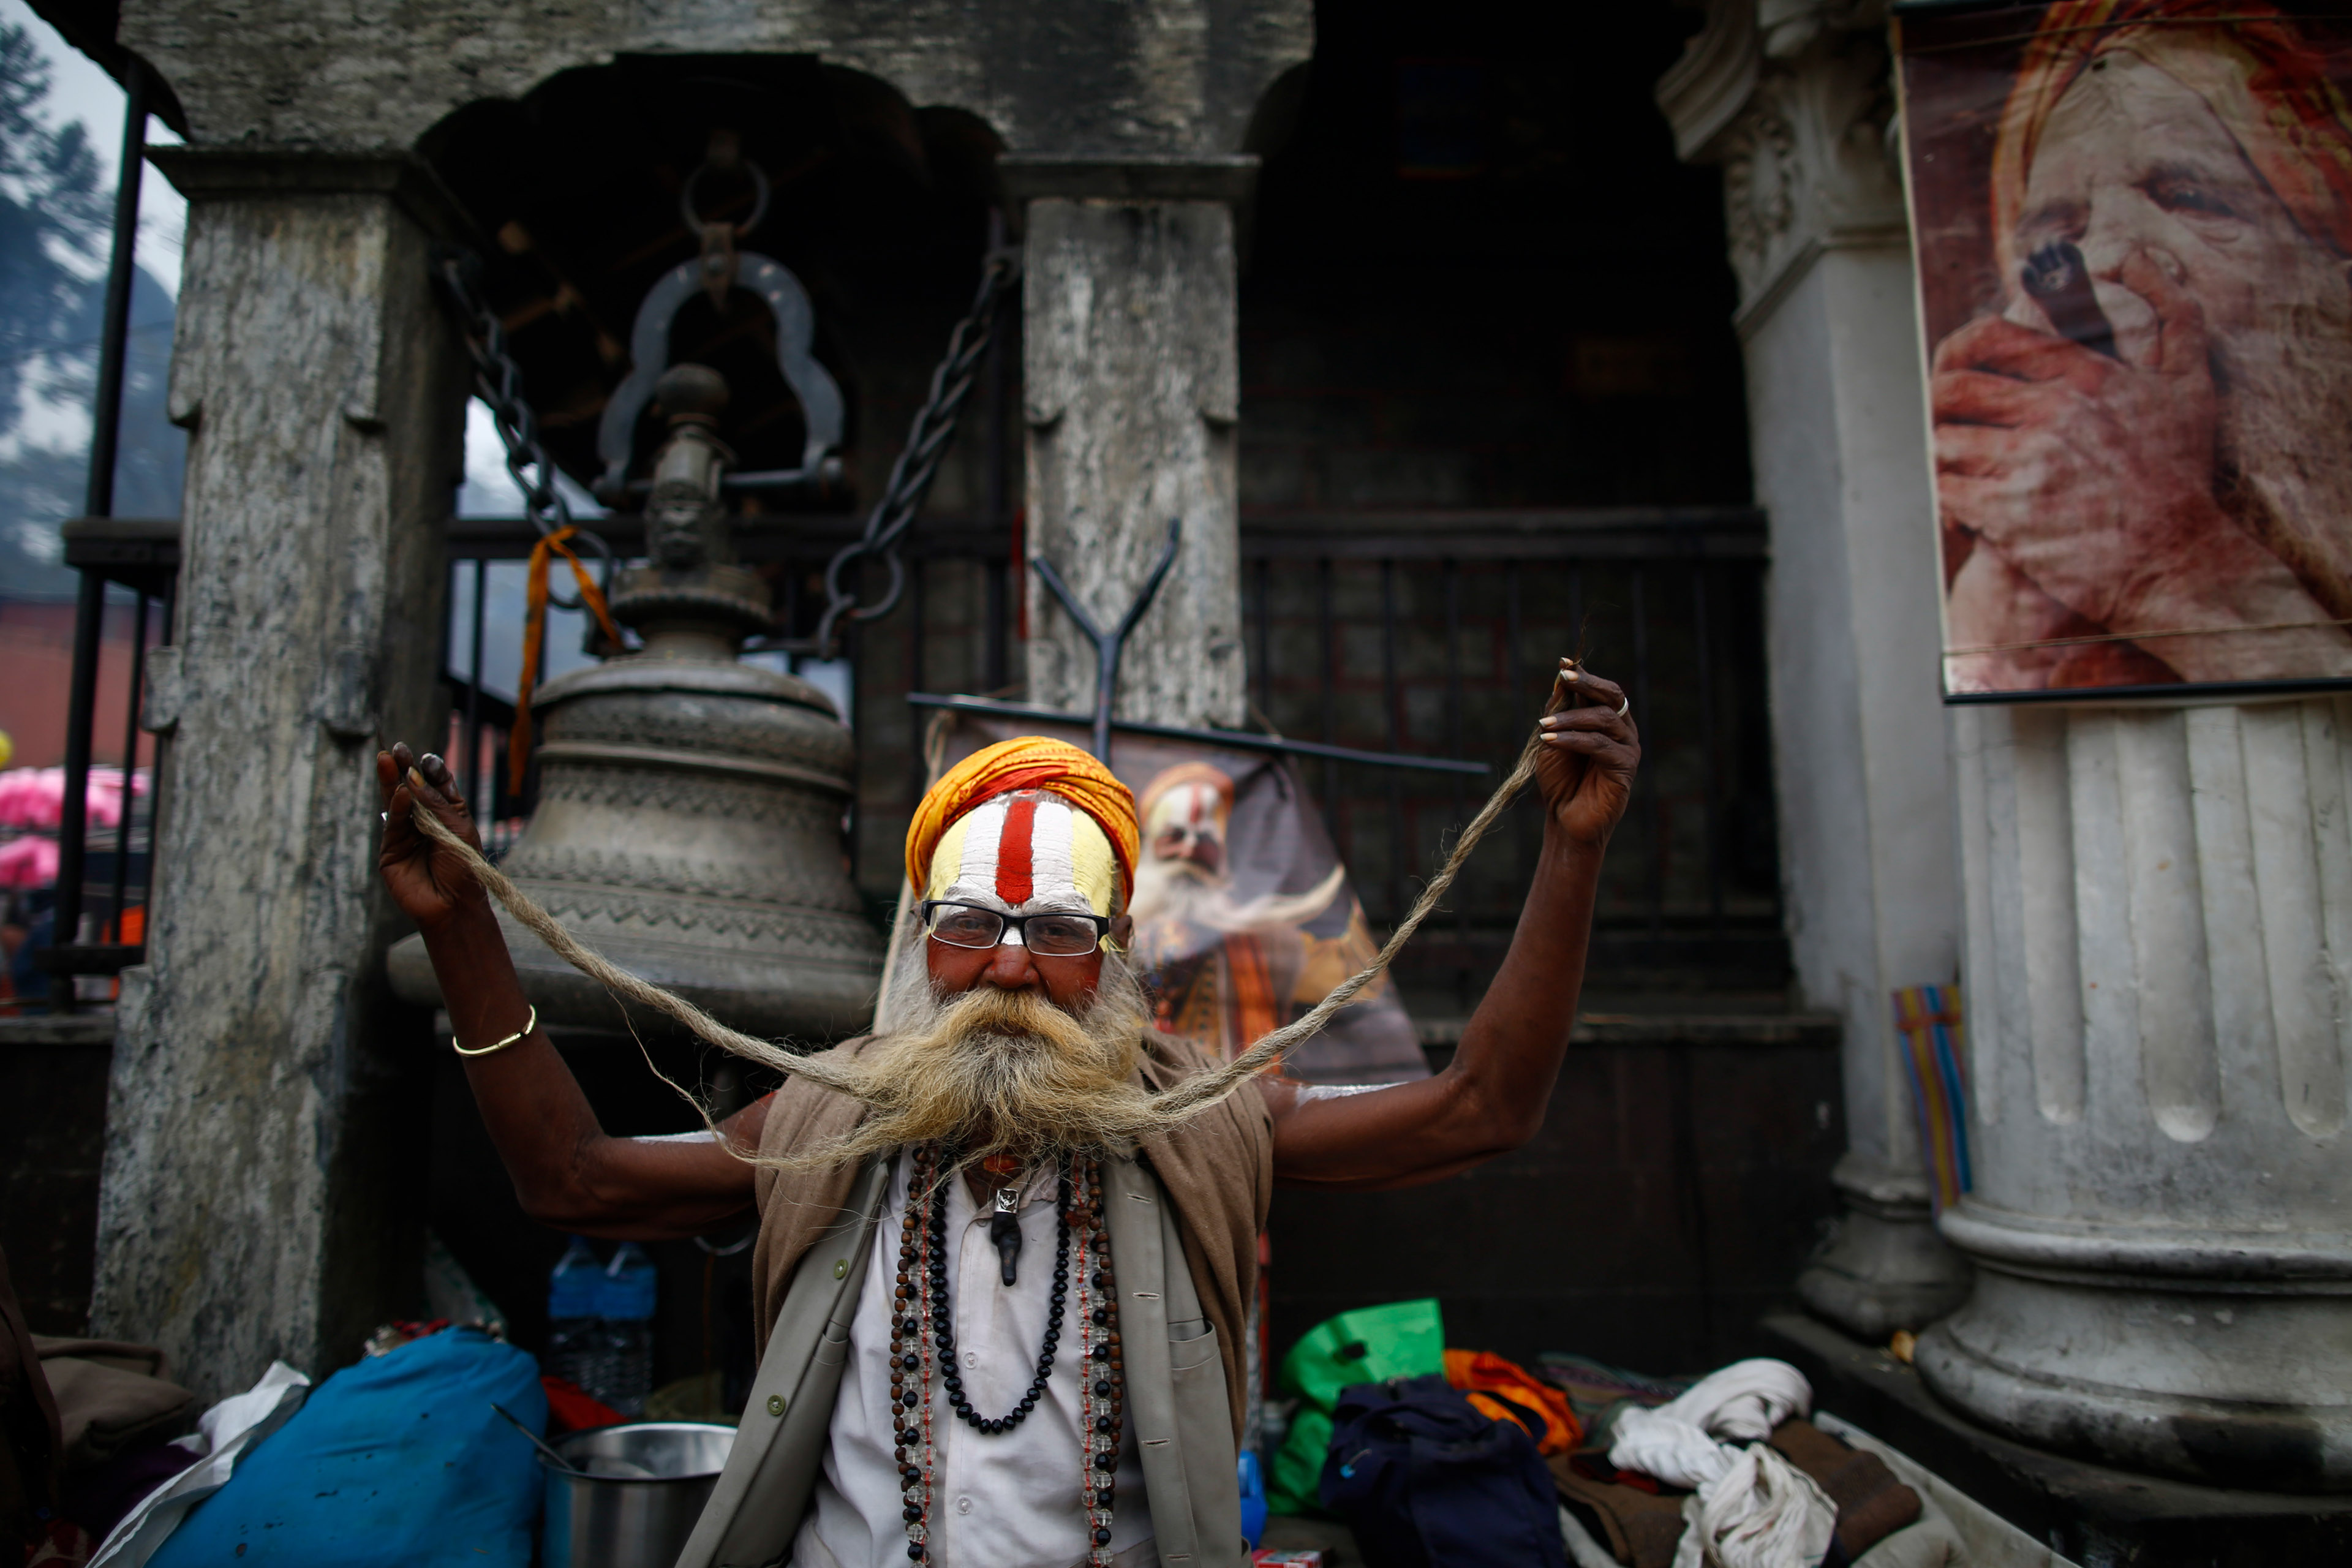 Eve of Maha Shivaratri Festival in Nepal